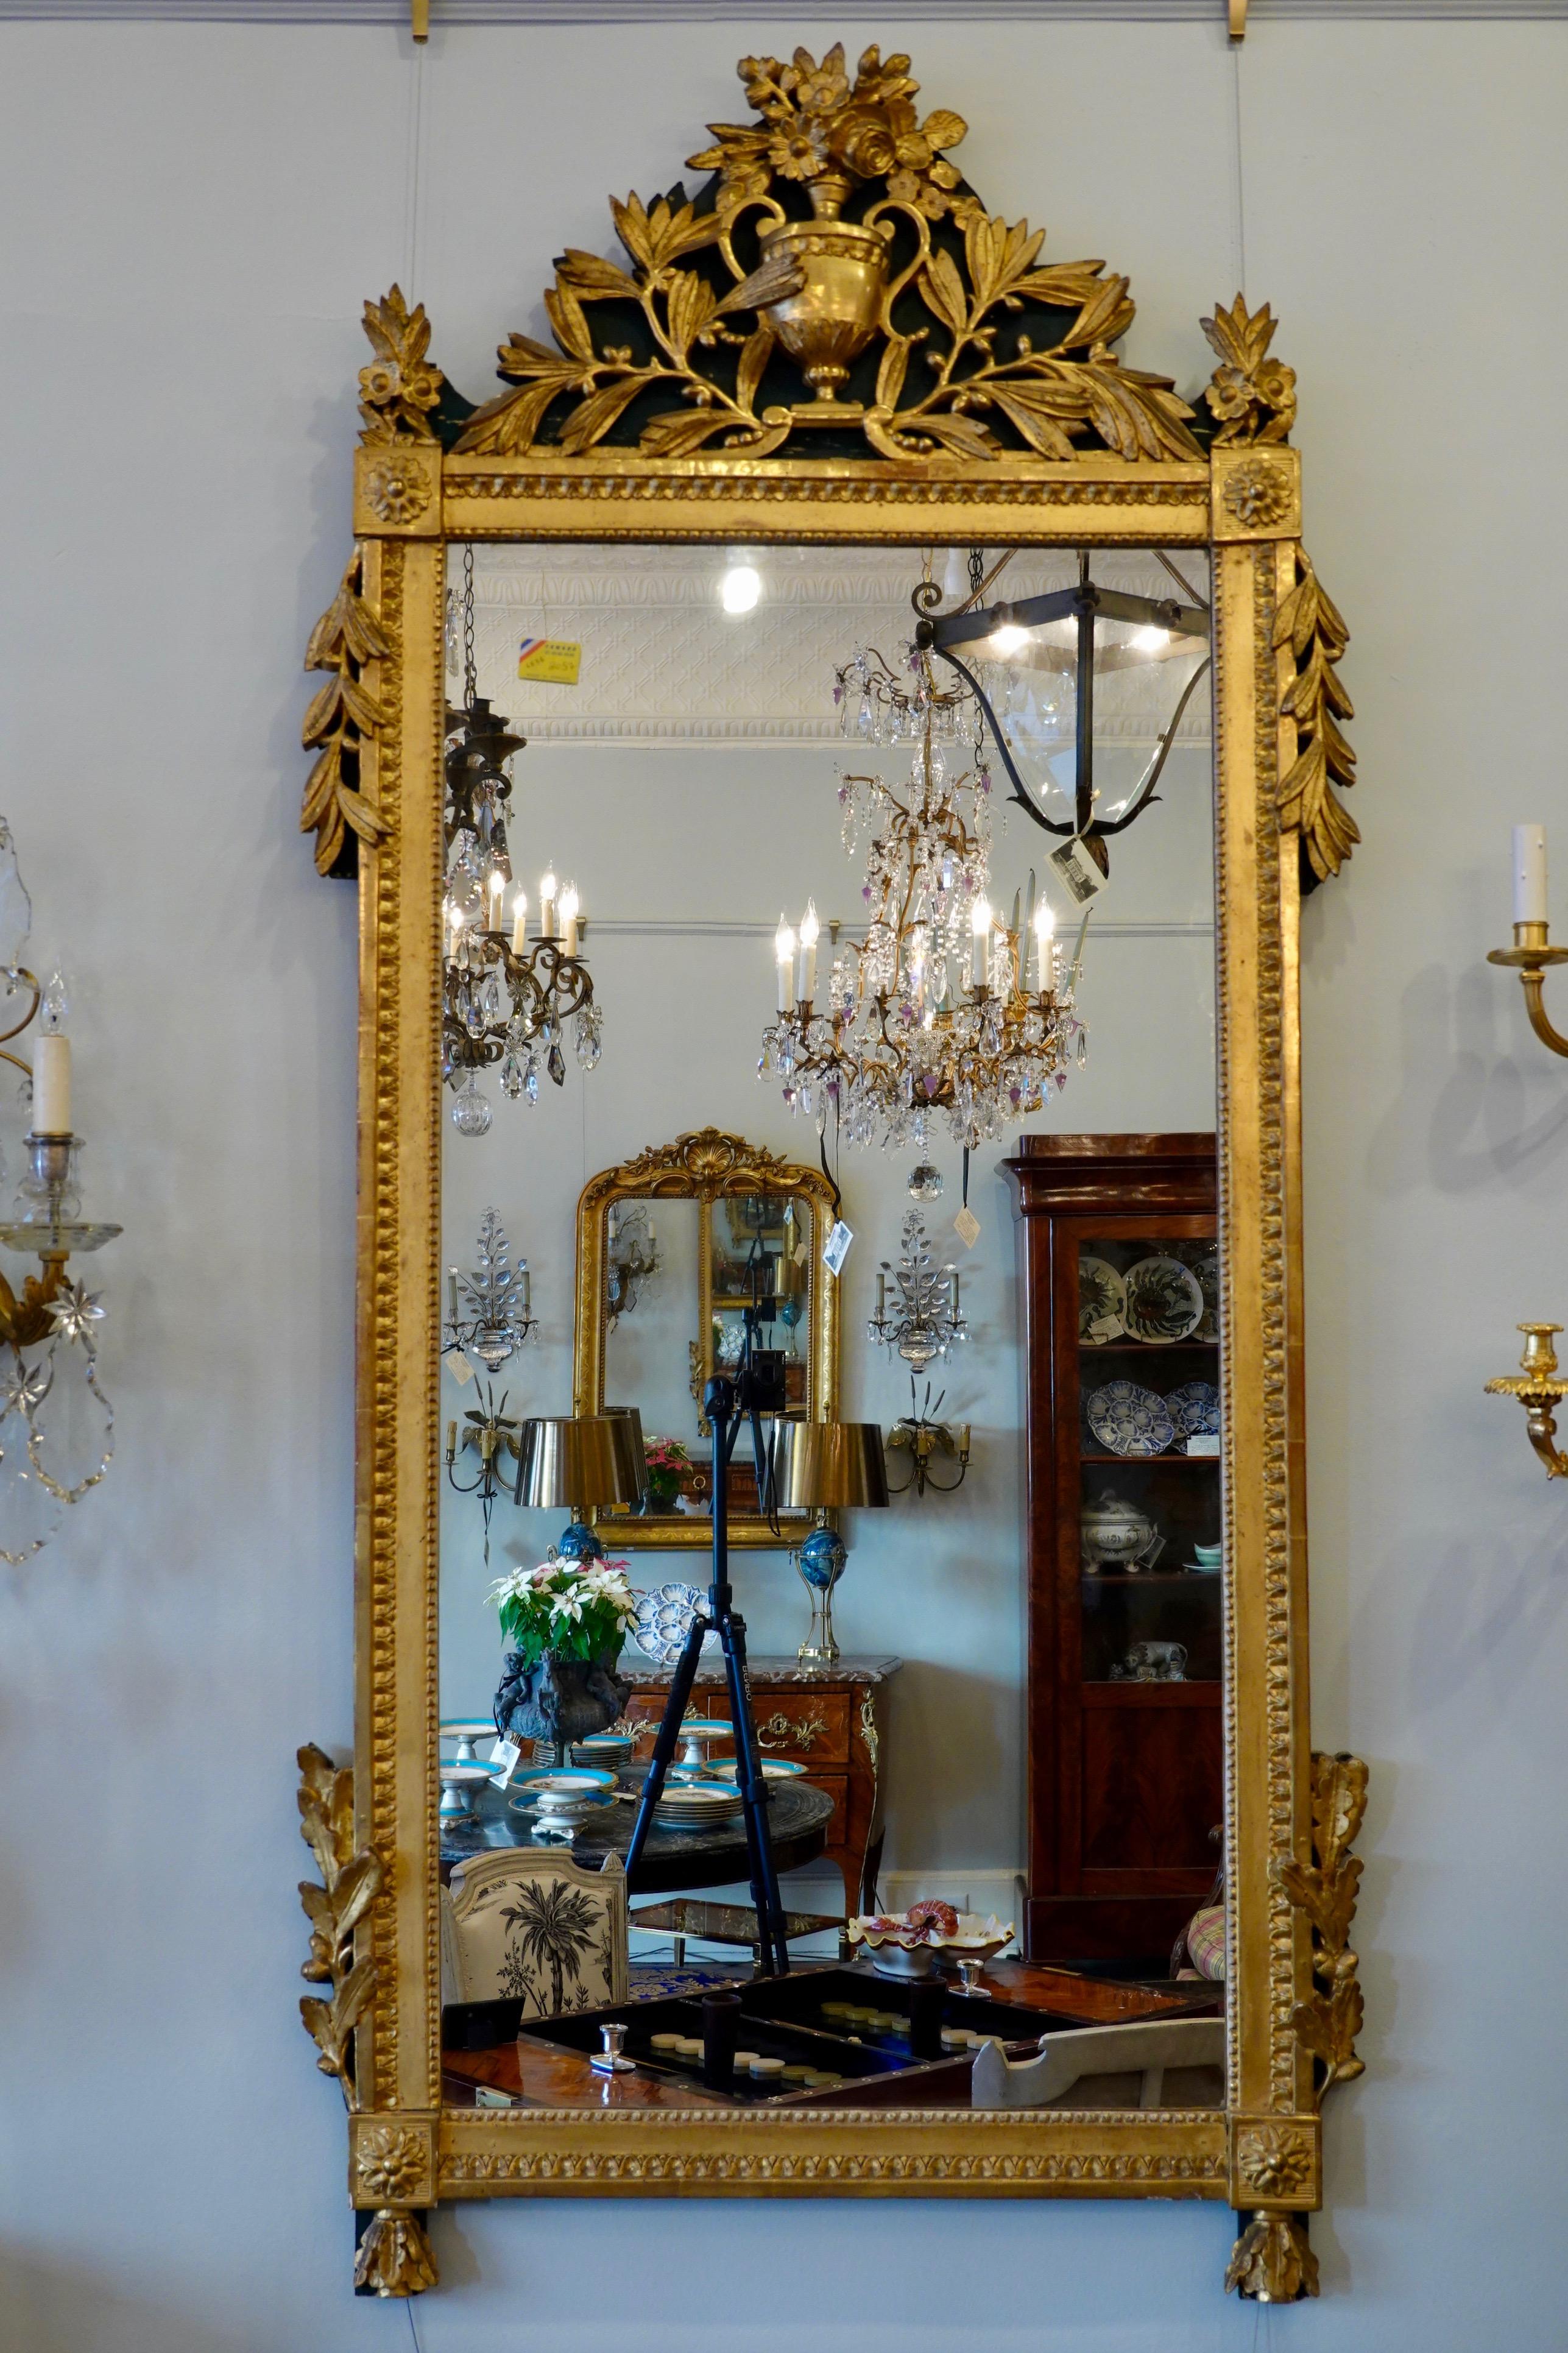 Grand miroir trumeau français en bois peint et doré, avec belle dorure d'origine, décoration néoclassique très détaillée (période Louis XVI, vers 1780) ; le verre est plus tard. Le miroir présente un cartouche représentant une urne avec une gerbe de